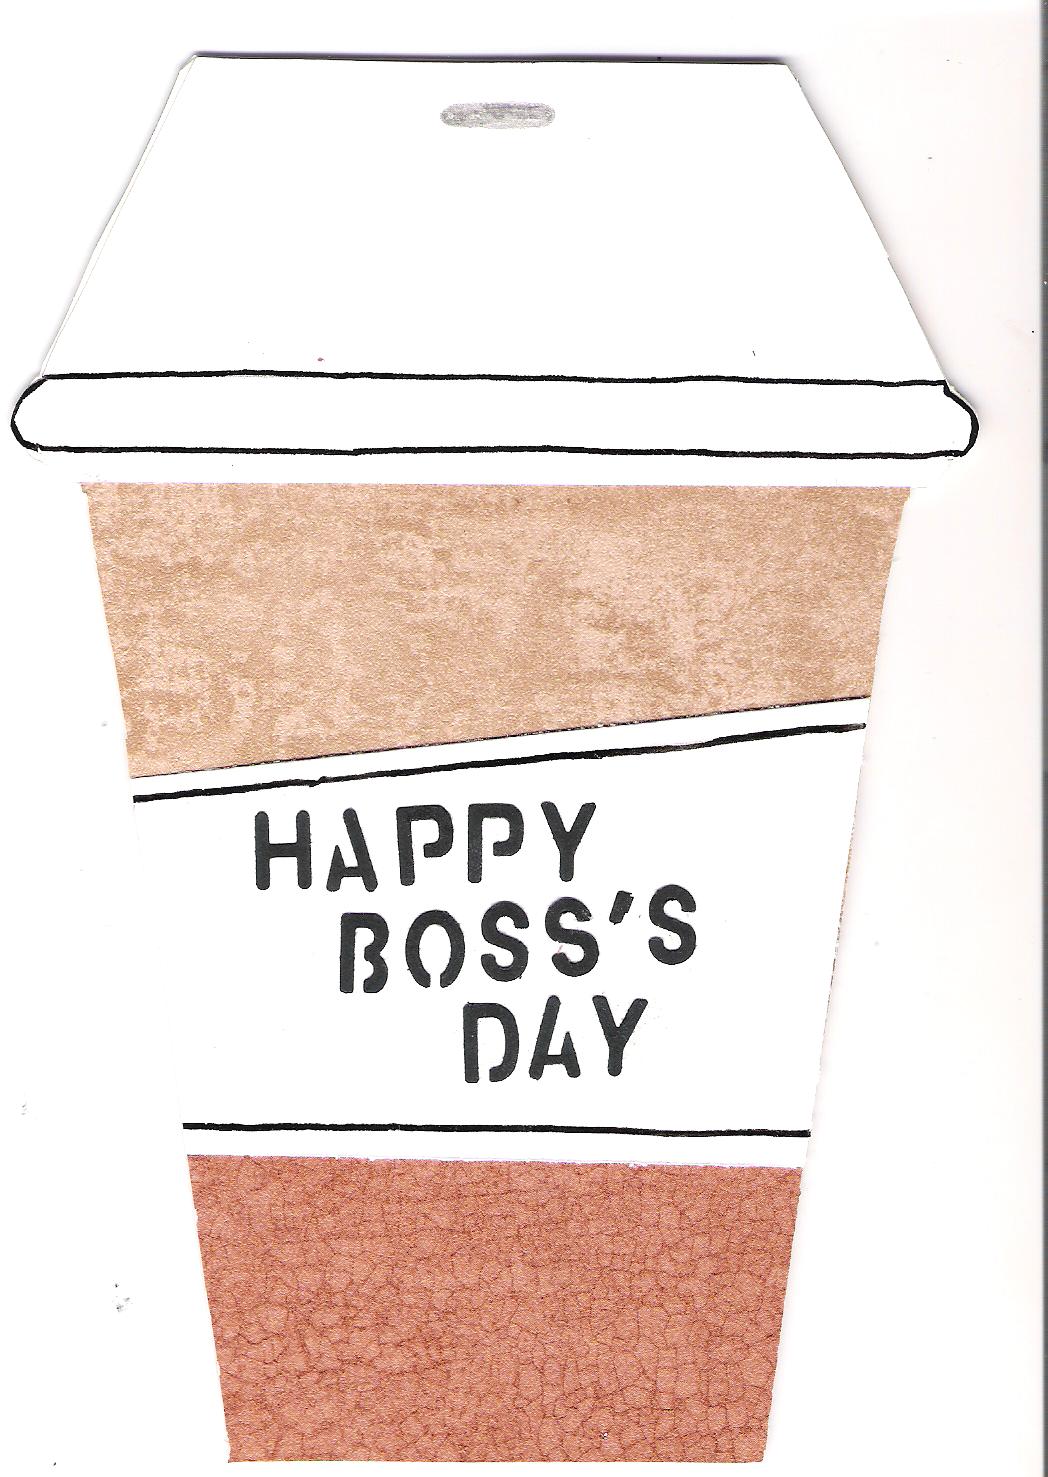 [National+Boss's+Day+2008+001.jpg]